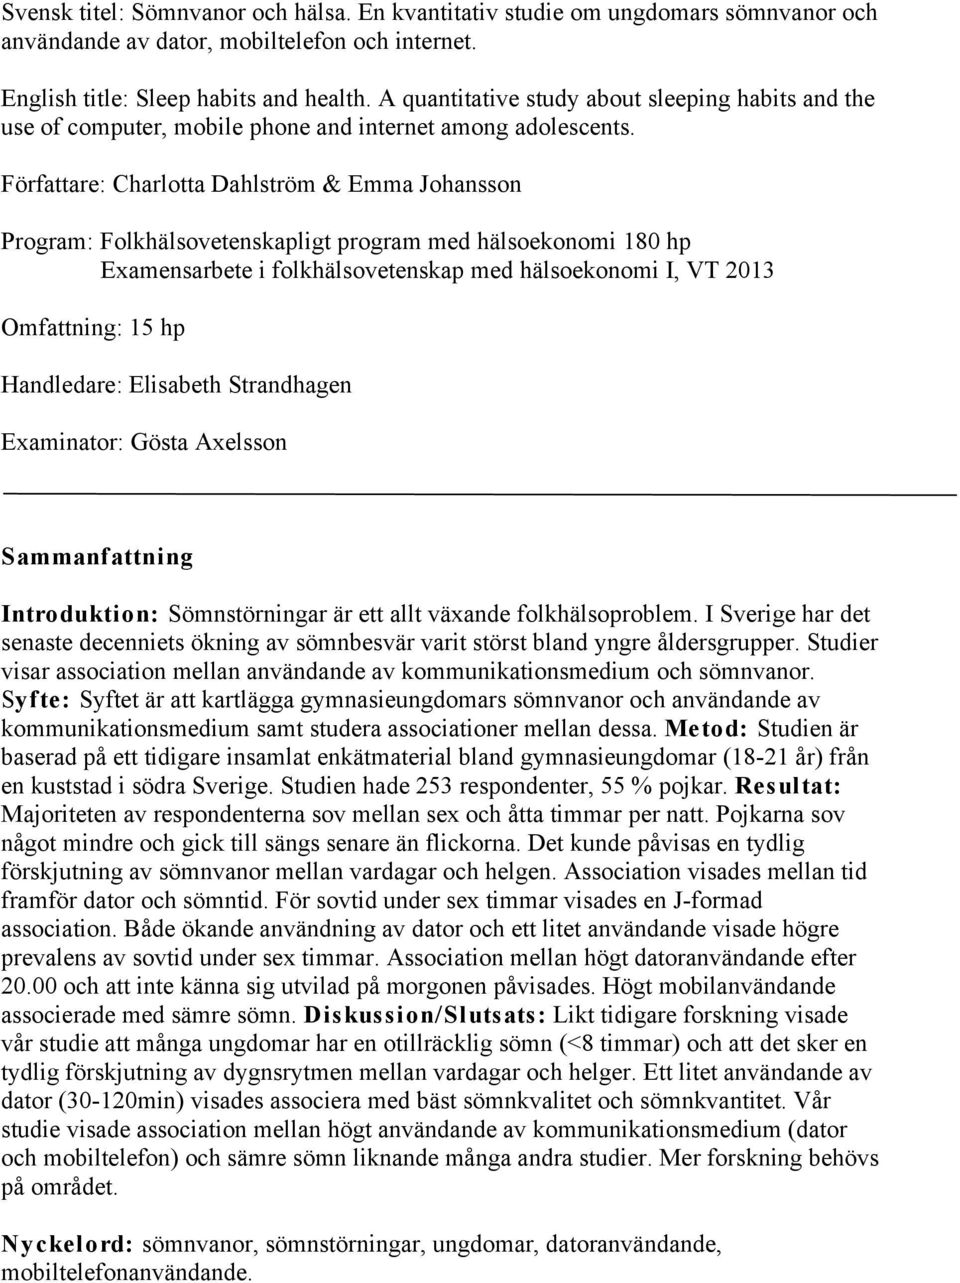 Författare: Charlotta Dahlström & Emma Johansson Program: Folkhälsovetenskapligt program med hälsoekonomi 180 hp Examensarbete i folkhälsovetenskap med hälsoekonomi I, VT 2013 Omfattning: 15 hp